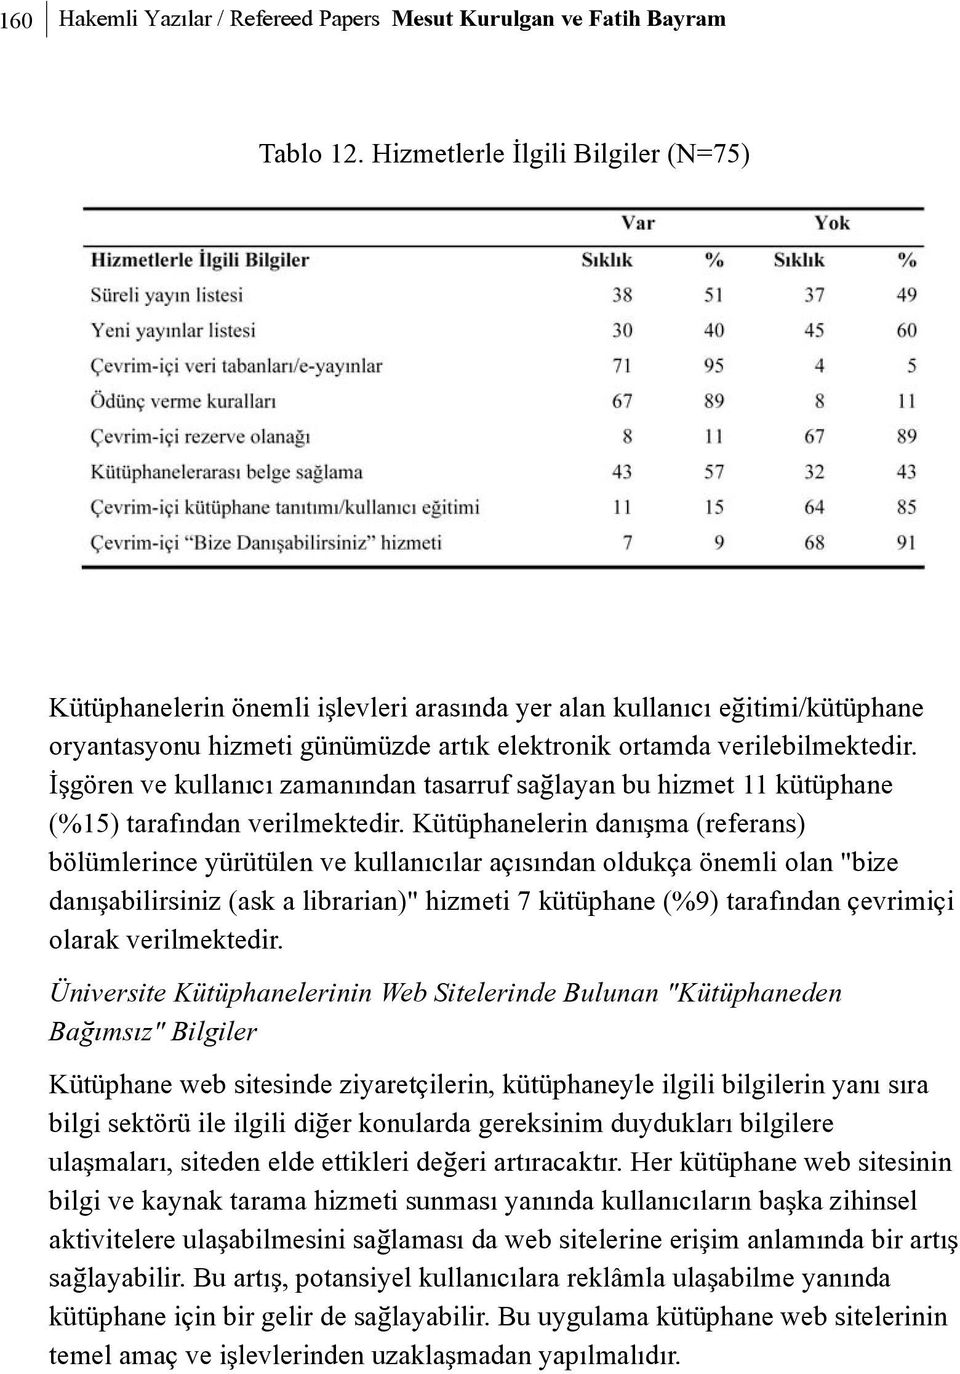 Ýþgören ve kullanýcý zamanýndan tasarruf saðlayan bu hizmet 11 kütüphane (%15) tarafýndan verilmektedir.